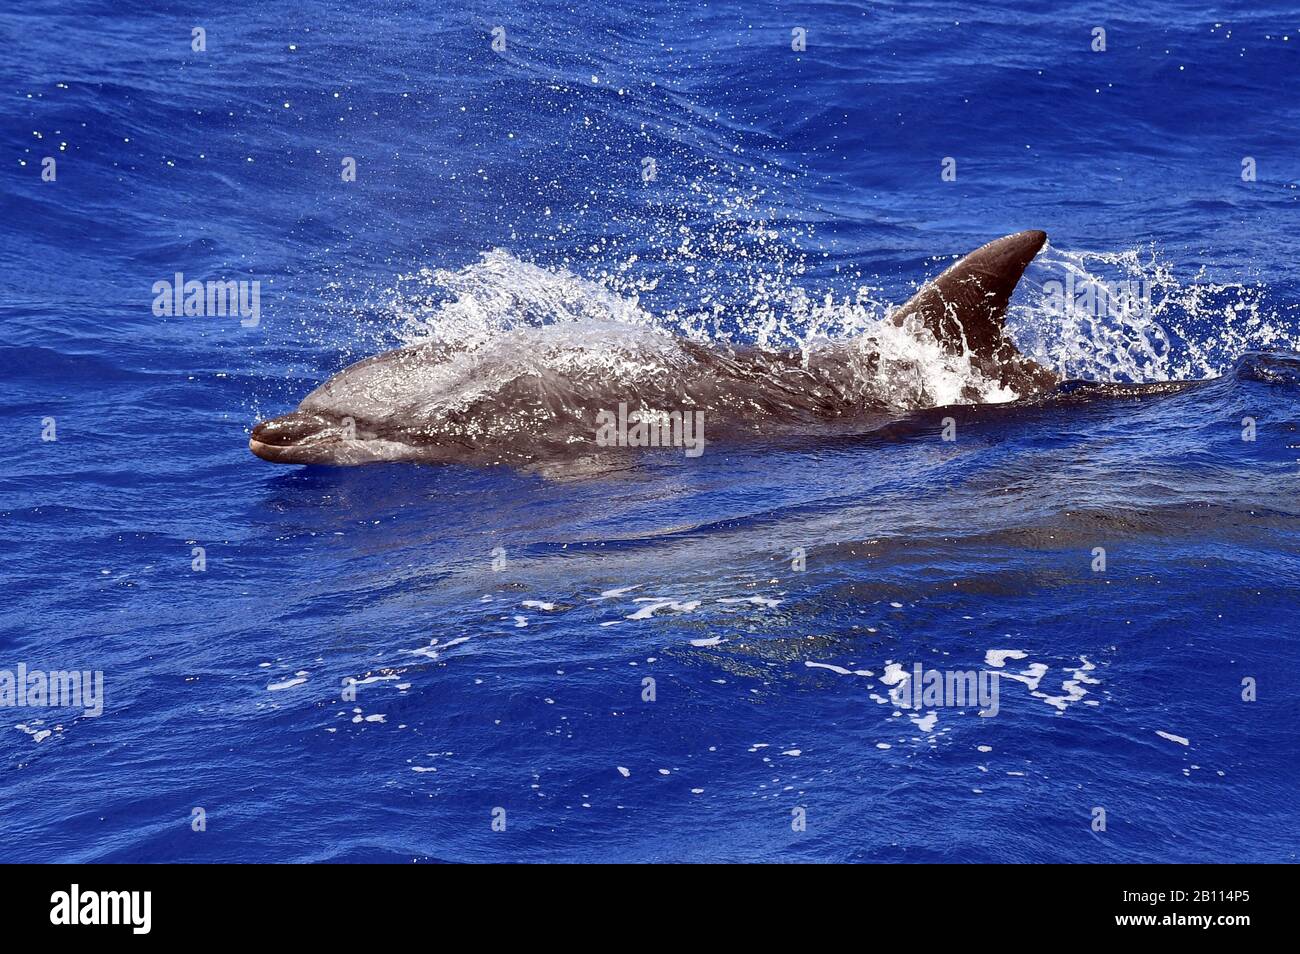 Bottlenosed dolphin, Common bottle-nosed dolphin (Tursiops truncatus), swimming in the open ocean, Atlantic Ocean Stock Photo